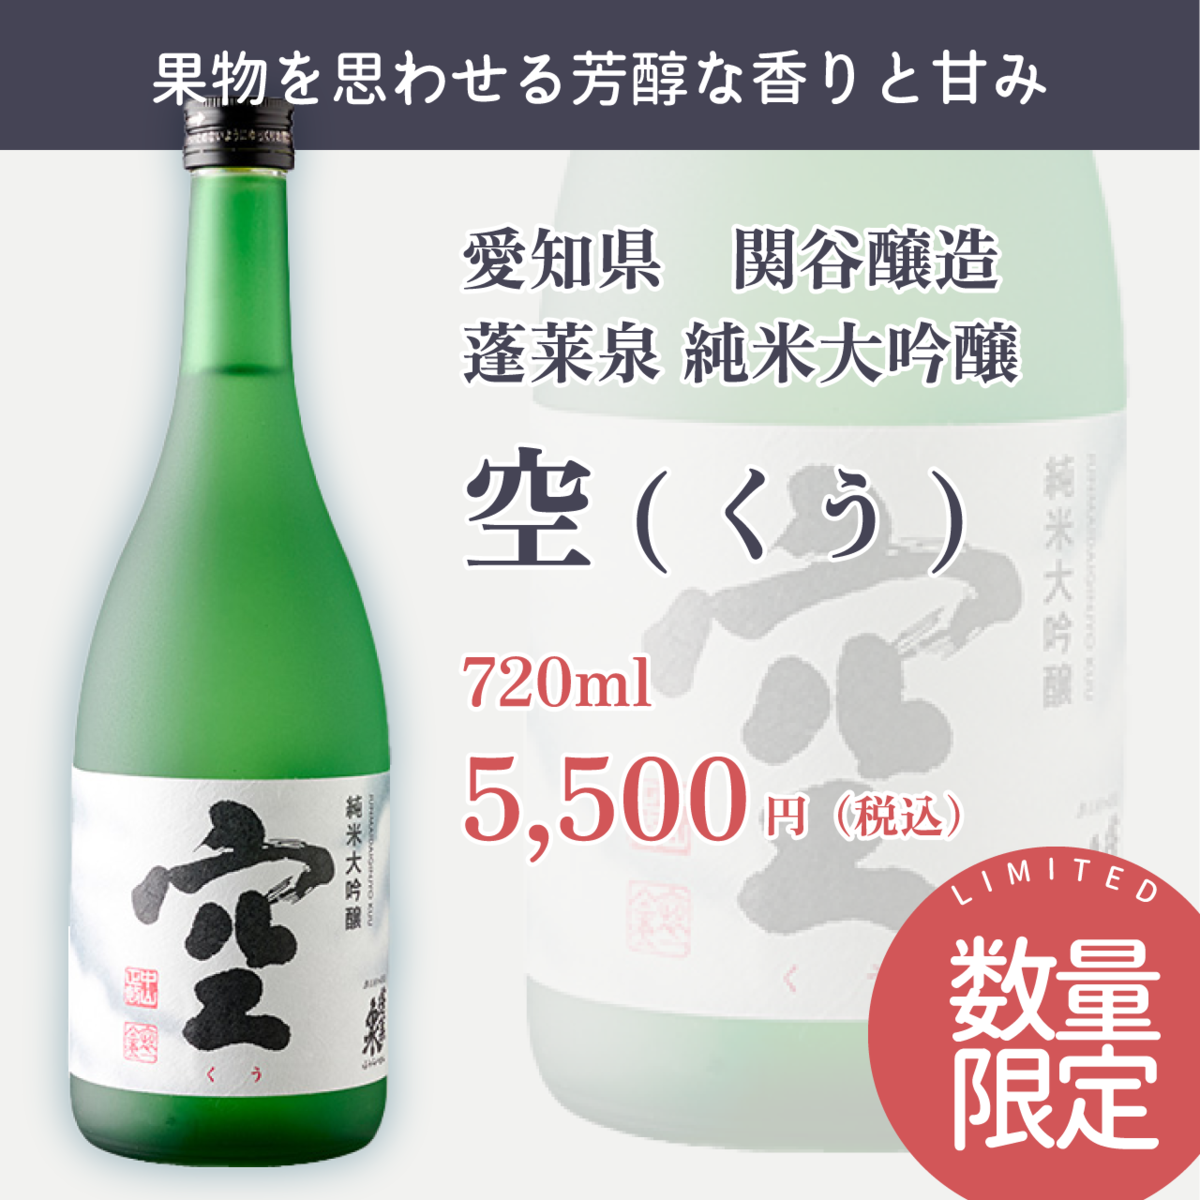 純米大吟醸 空 蓬莱泉 関谷醸造 1800ml 2本セット  純米大吟醸 蓬莱泉